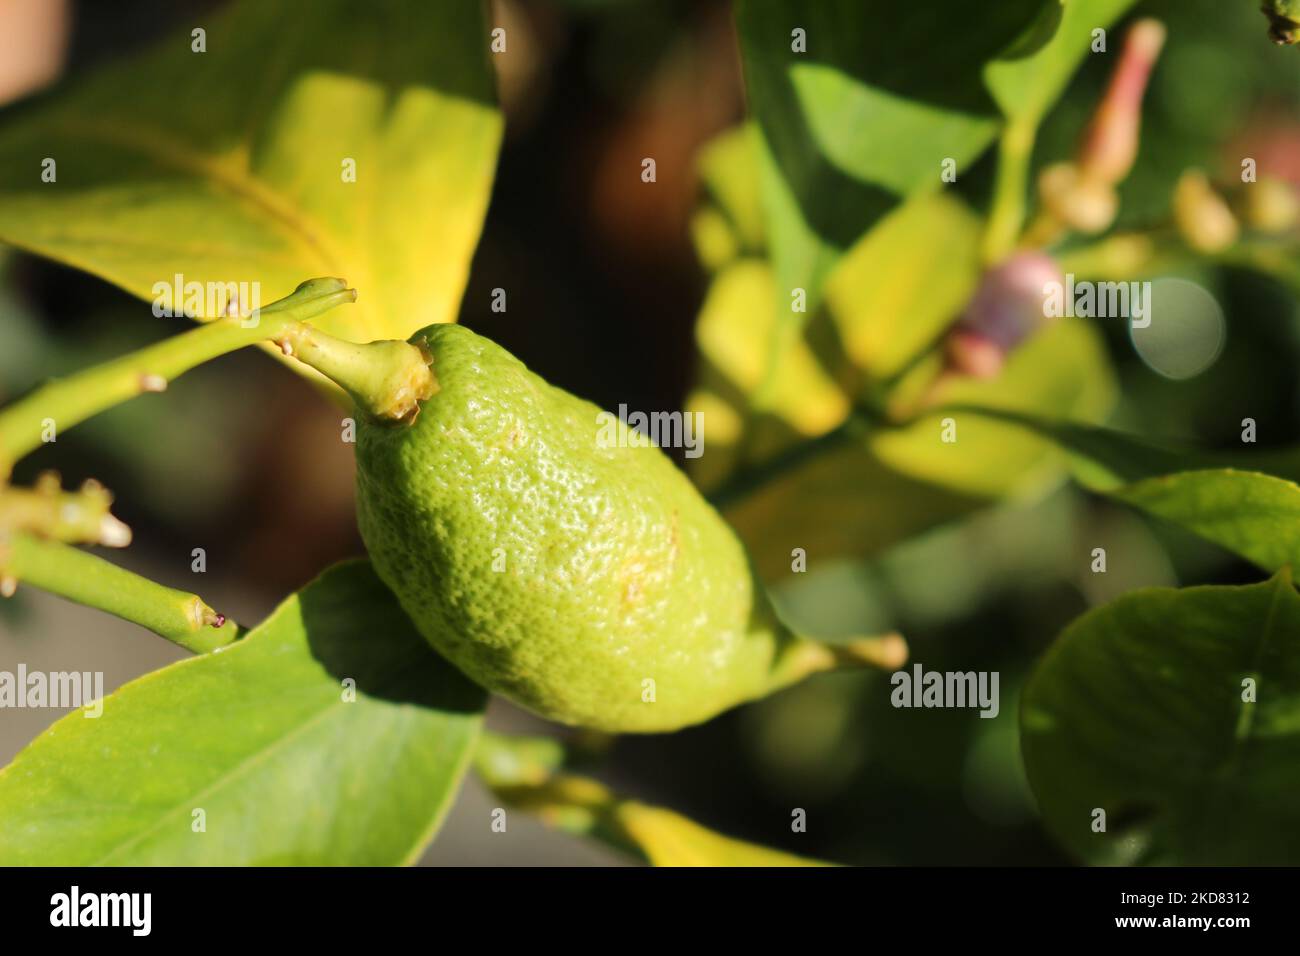 Unripe misshapen green citrus fruit seen in the daylight outside on a tree Stock Photo